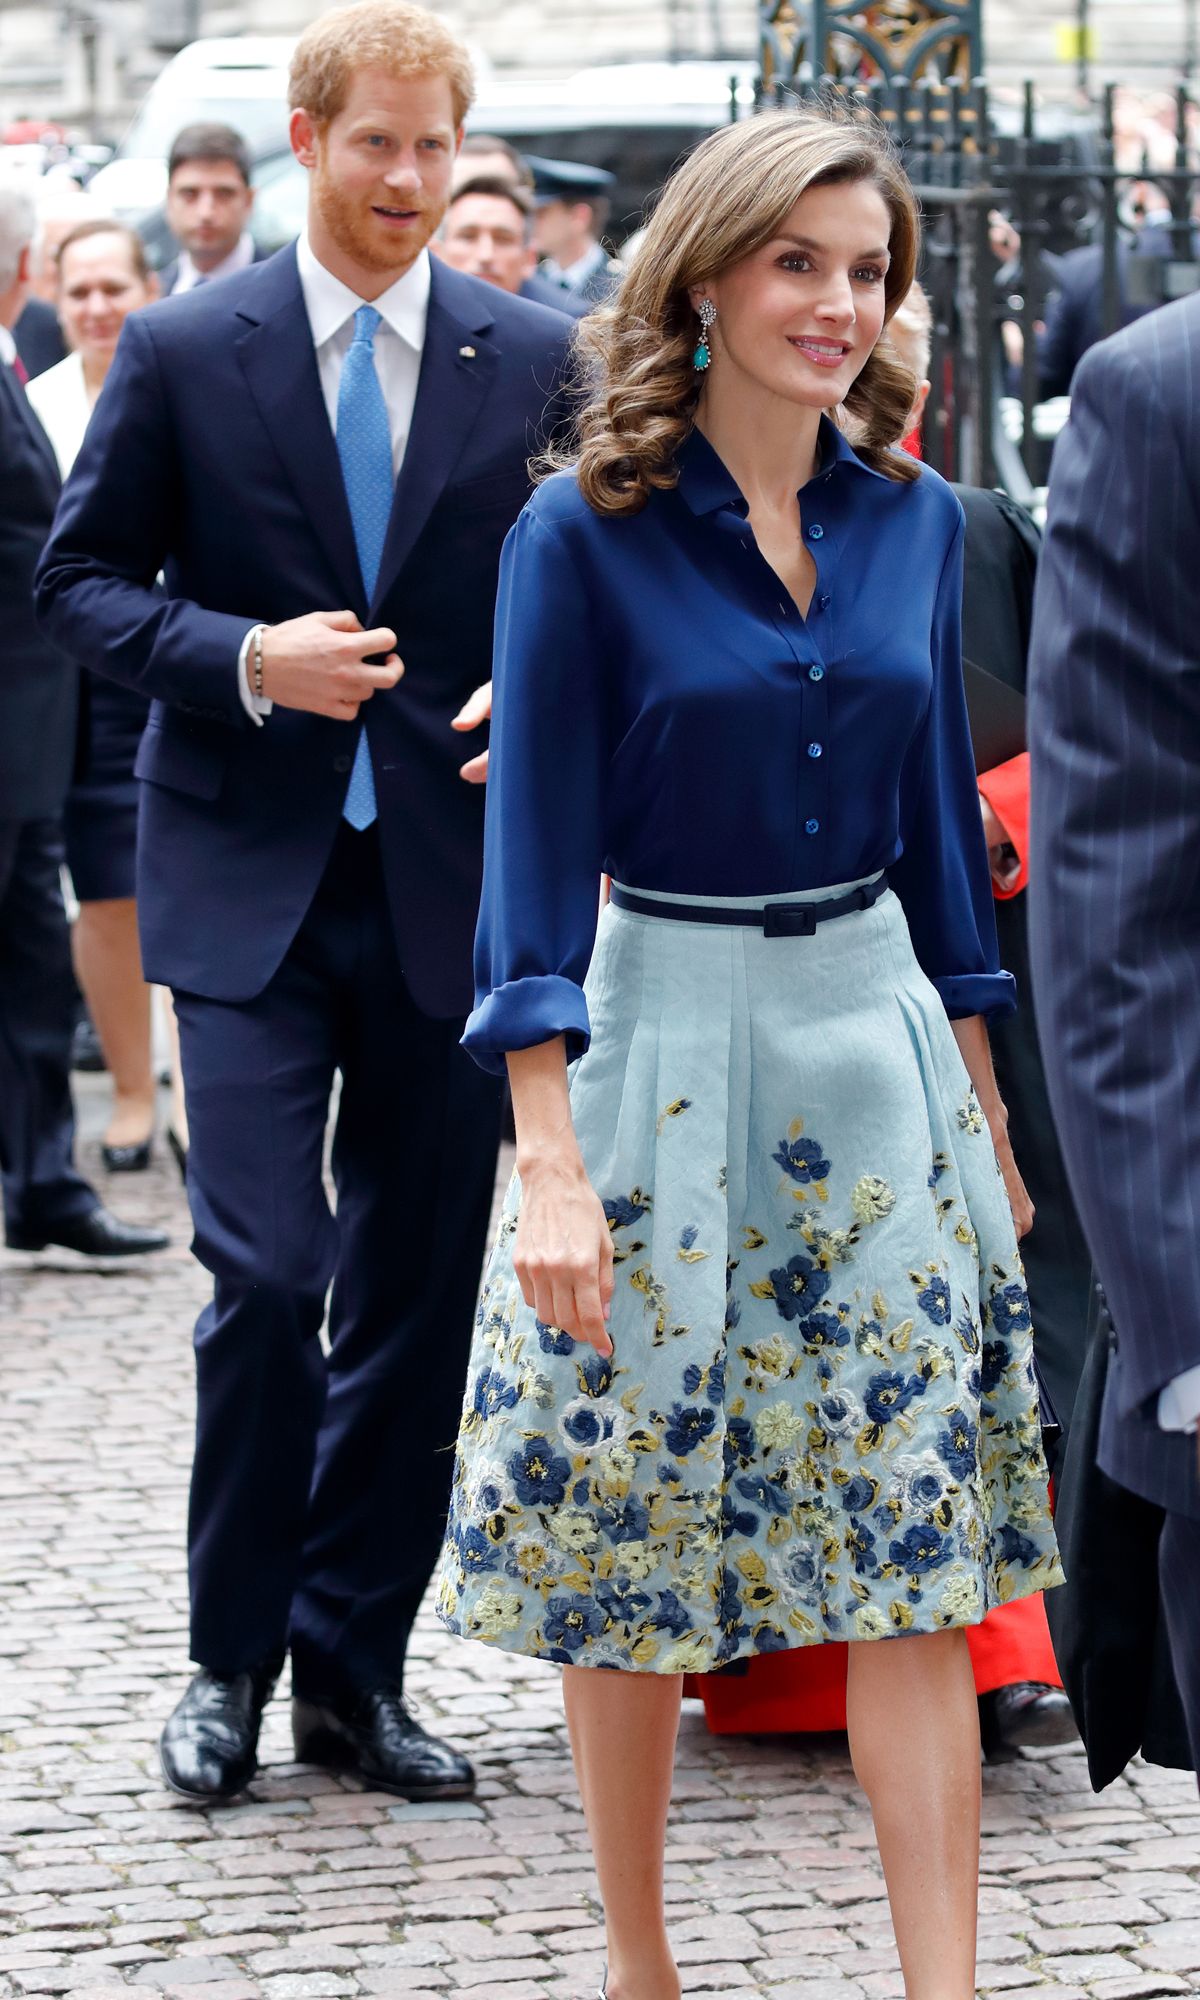 キャサリン妃越え スペイン王妃 レティシア妃のファッションを徹底サーチ